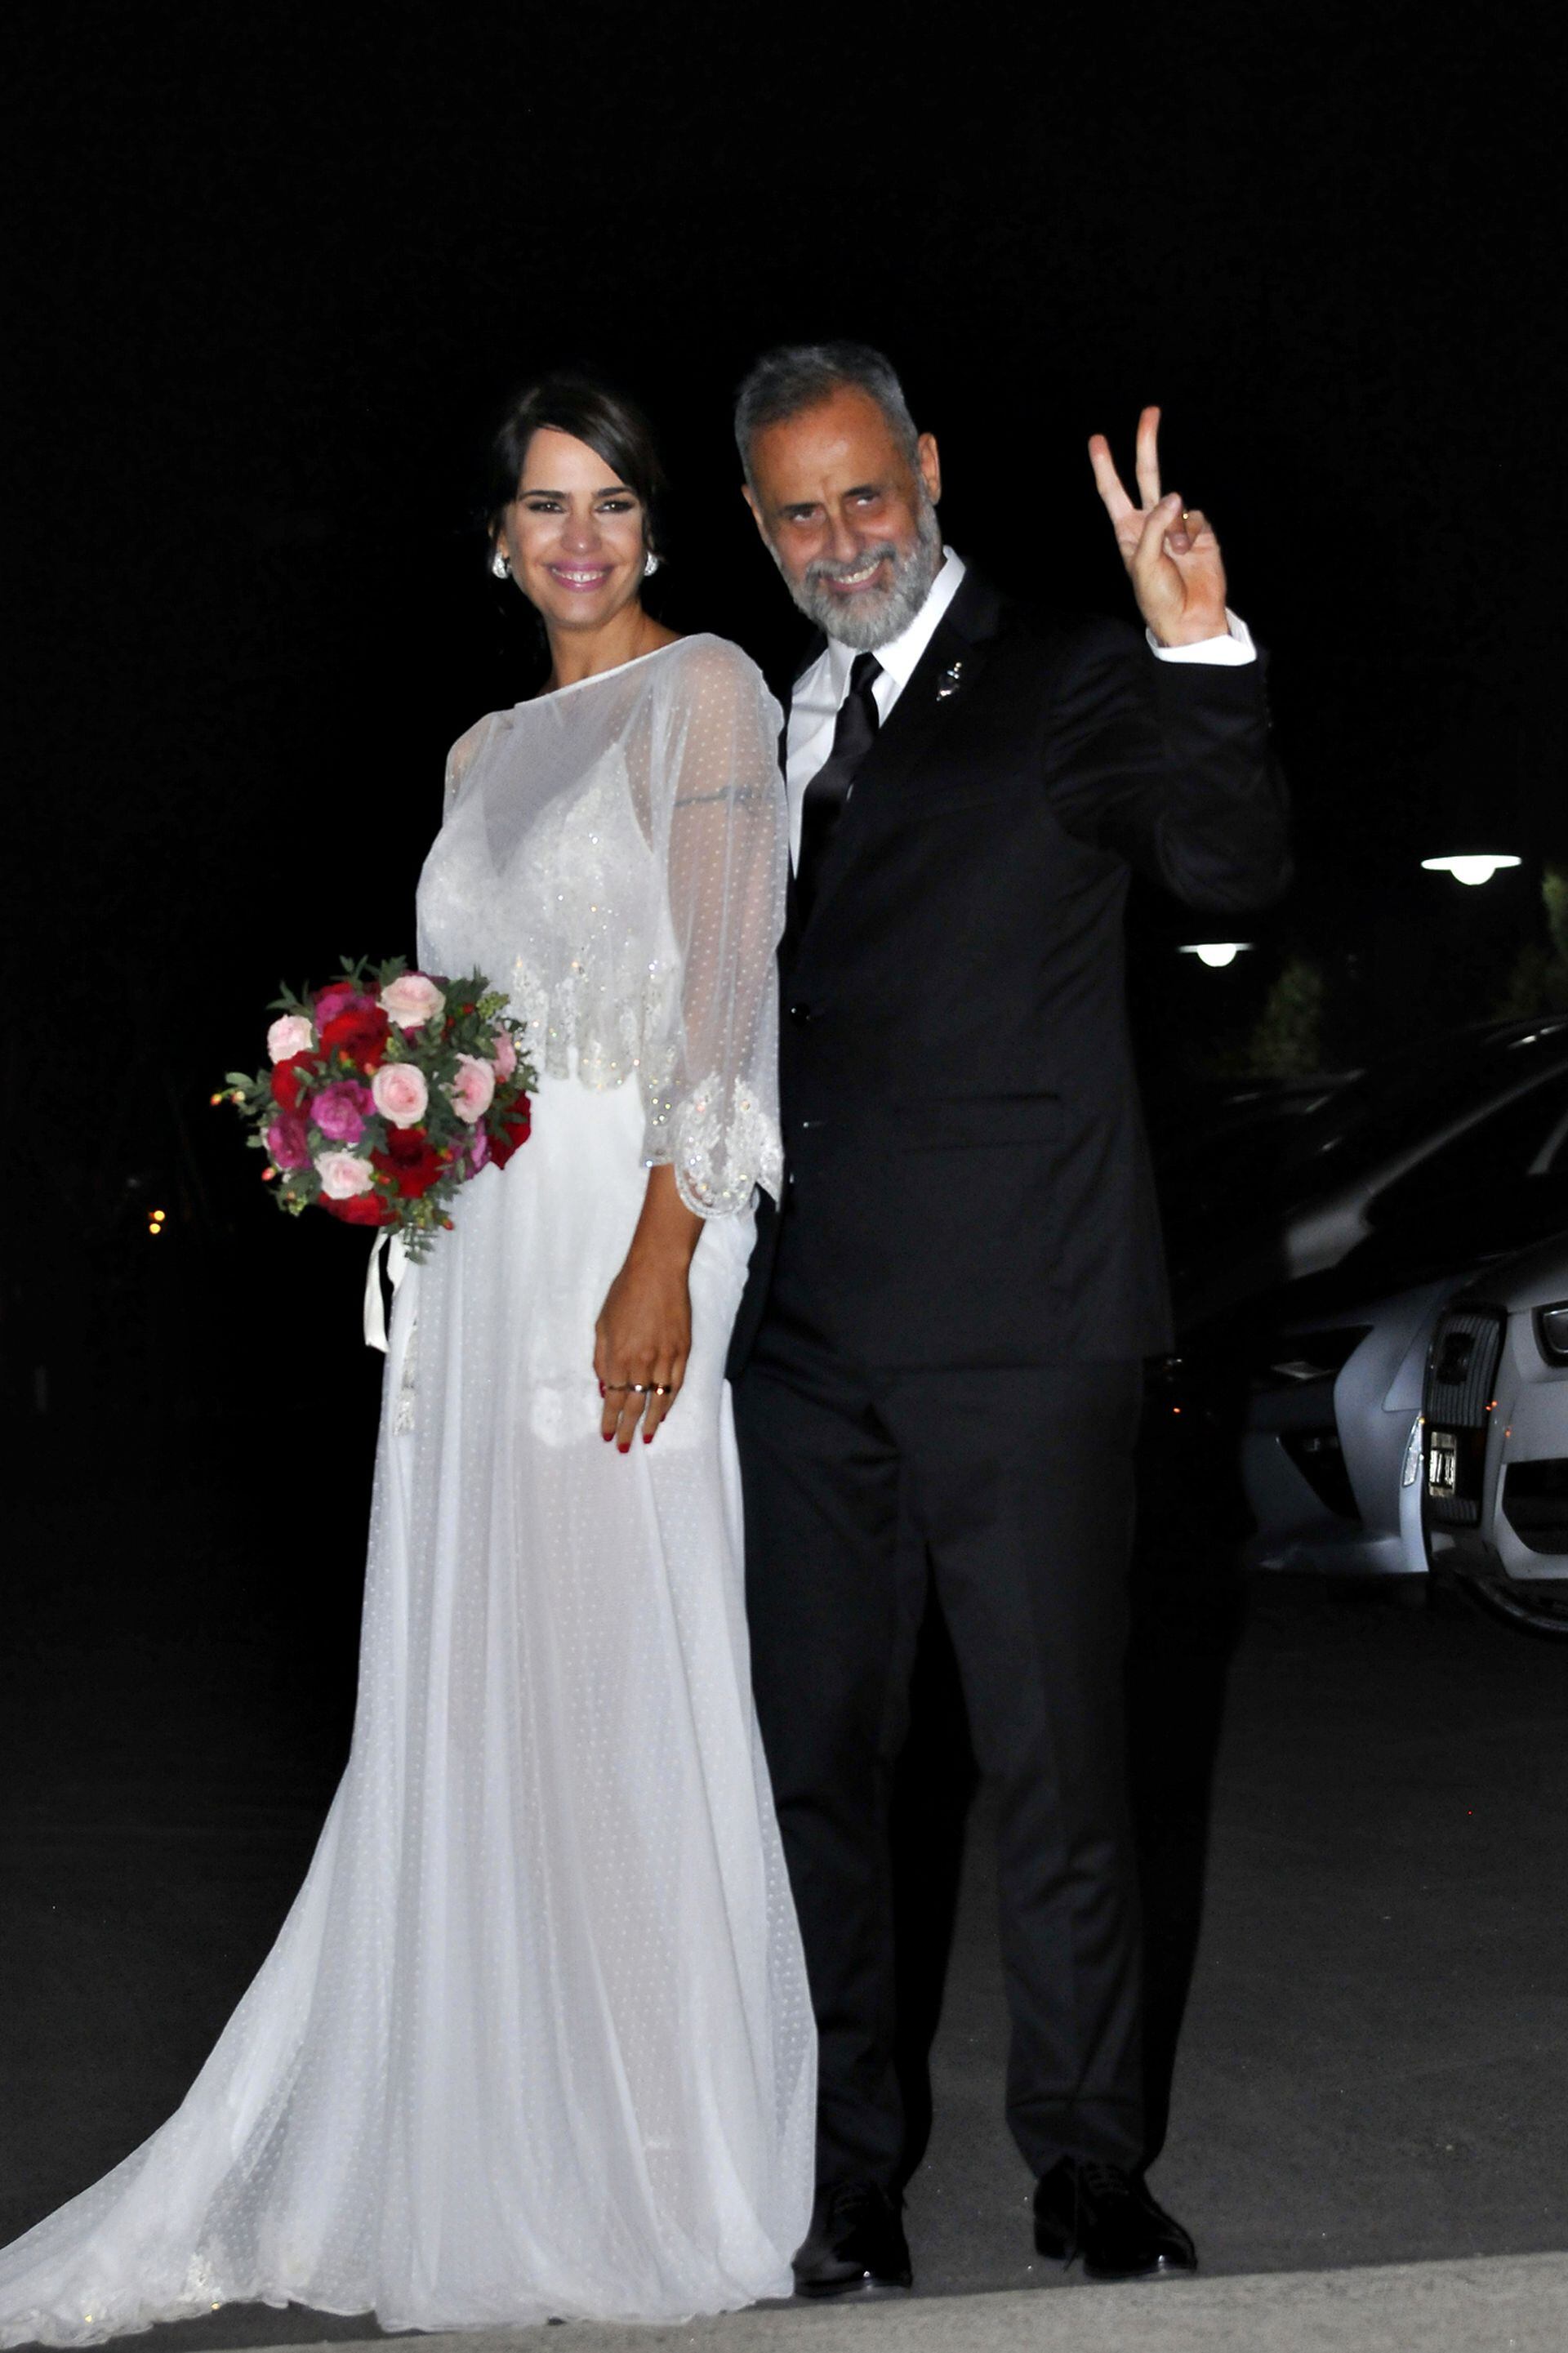 El casamiento de Jorge Rial y Romina Pereiro